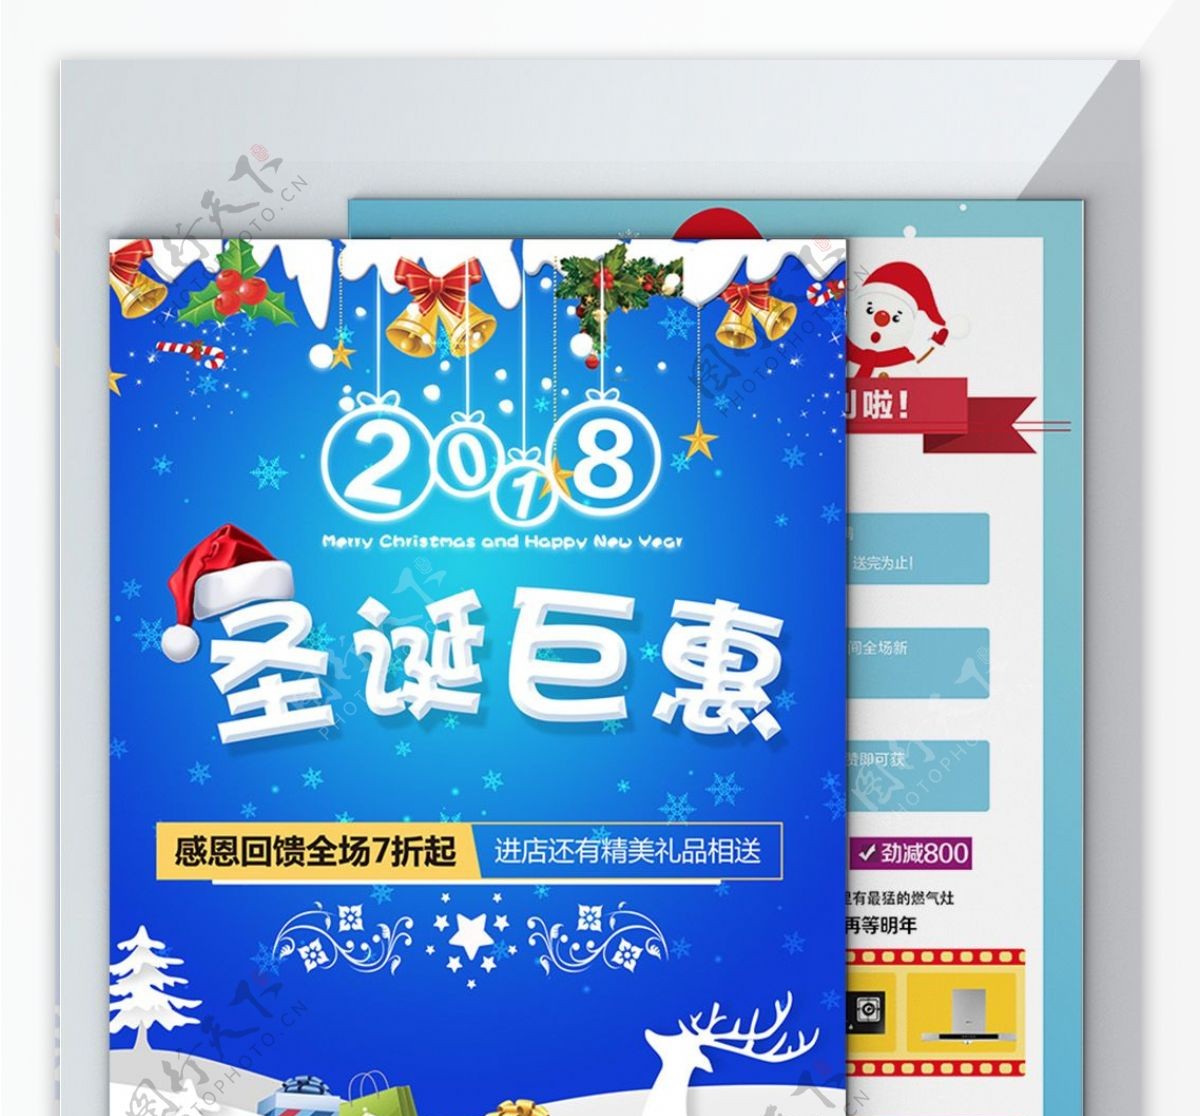 圣诞特惠商场超市电器食品促销蓝色海报